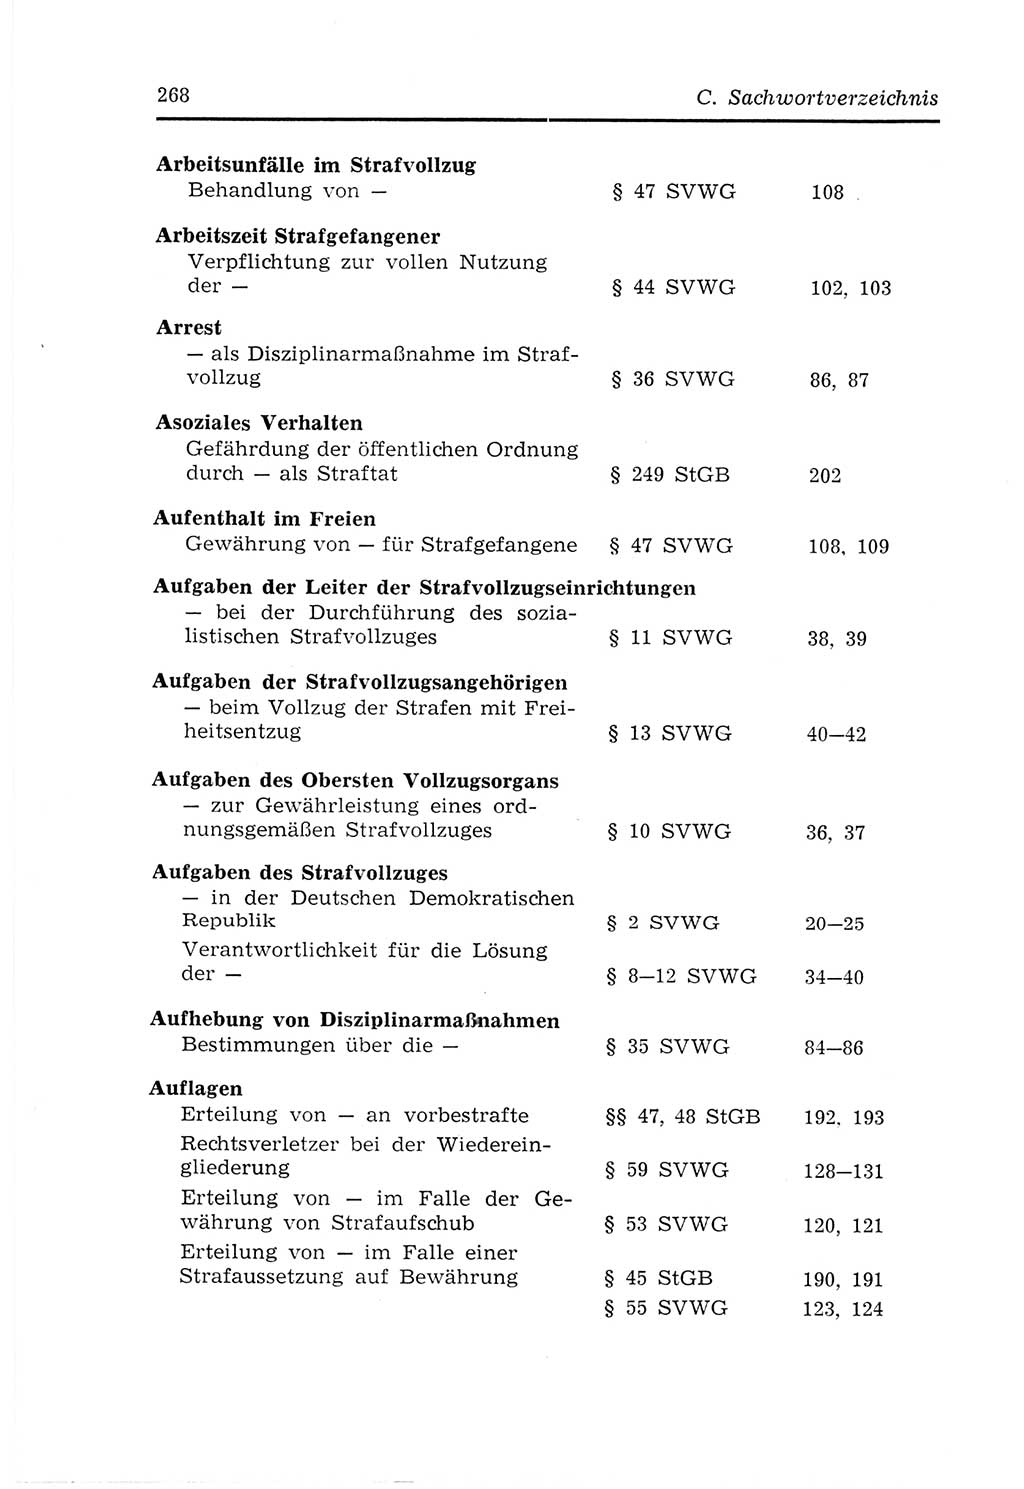 Strafvollzugs- und Wiedereingliederungsgesetz (SVWG) der Deutschen Demokratischen Republik (DDR) 1968, Seite 268 (SVWG DDR 1968, S. 268)